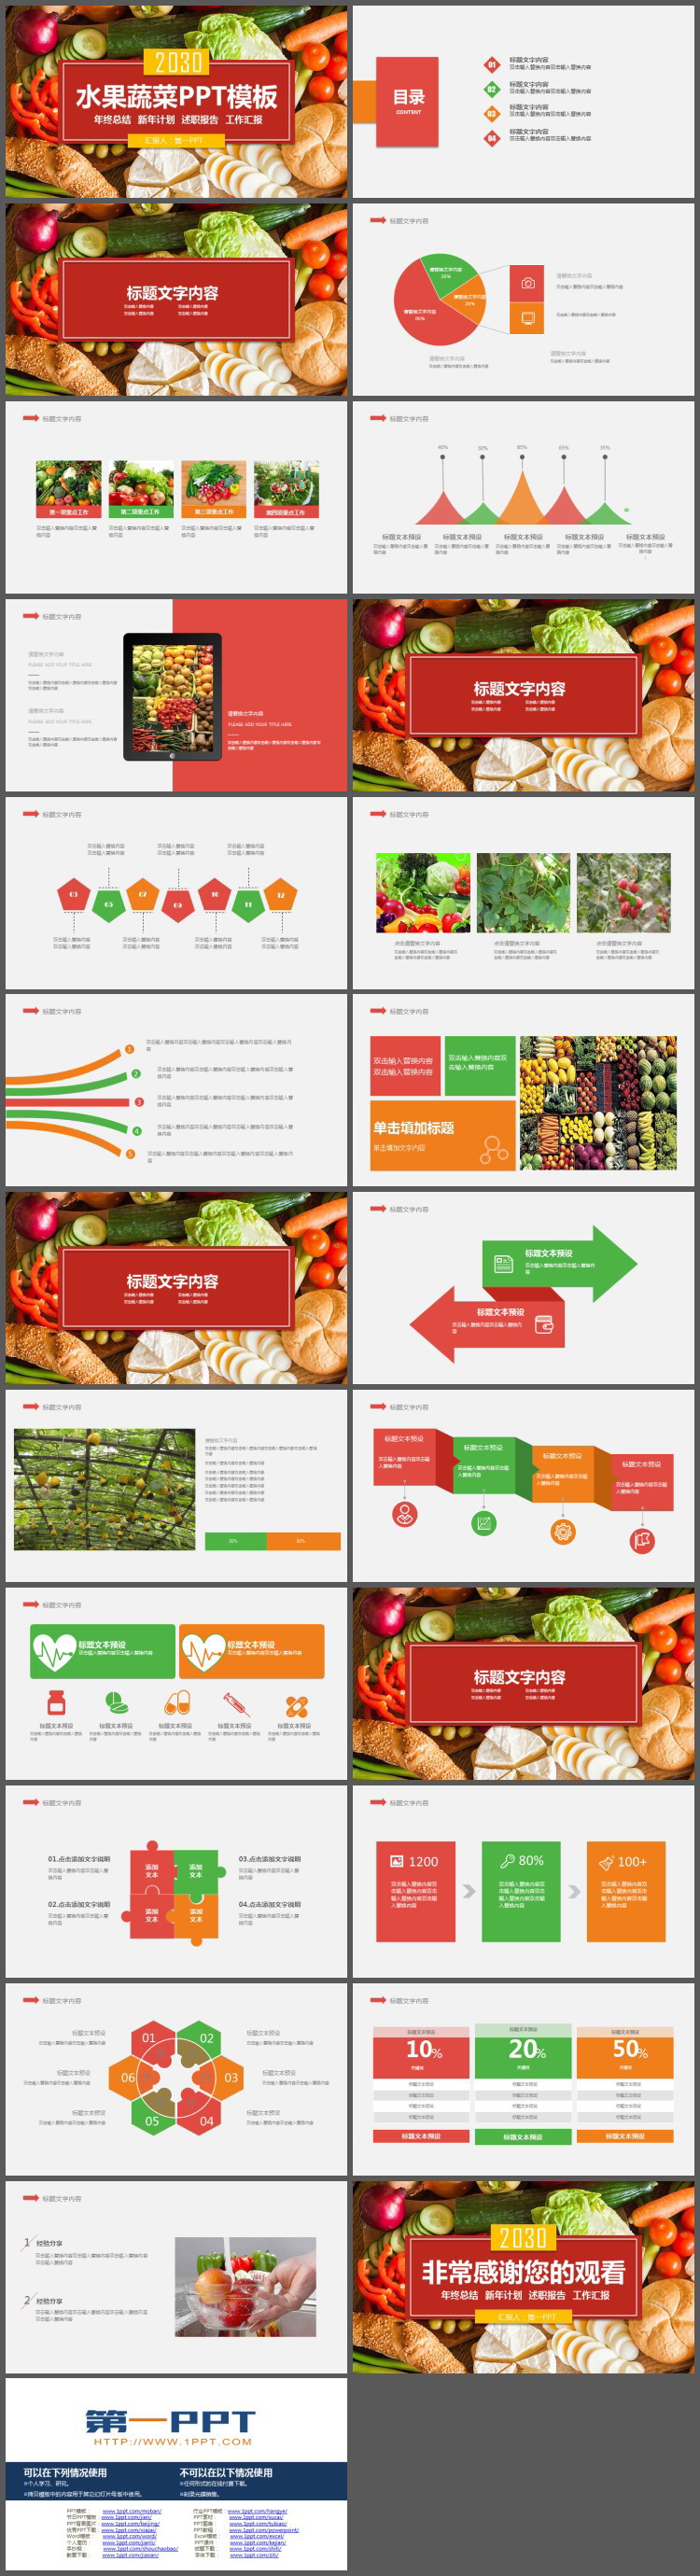 色彩丰富的蔬菜主题PPT模板免费下载